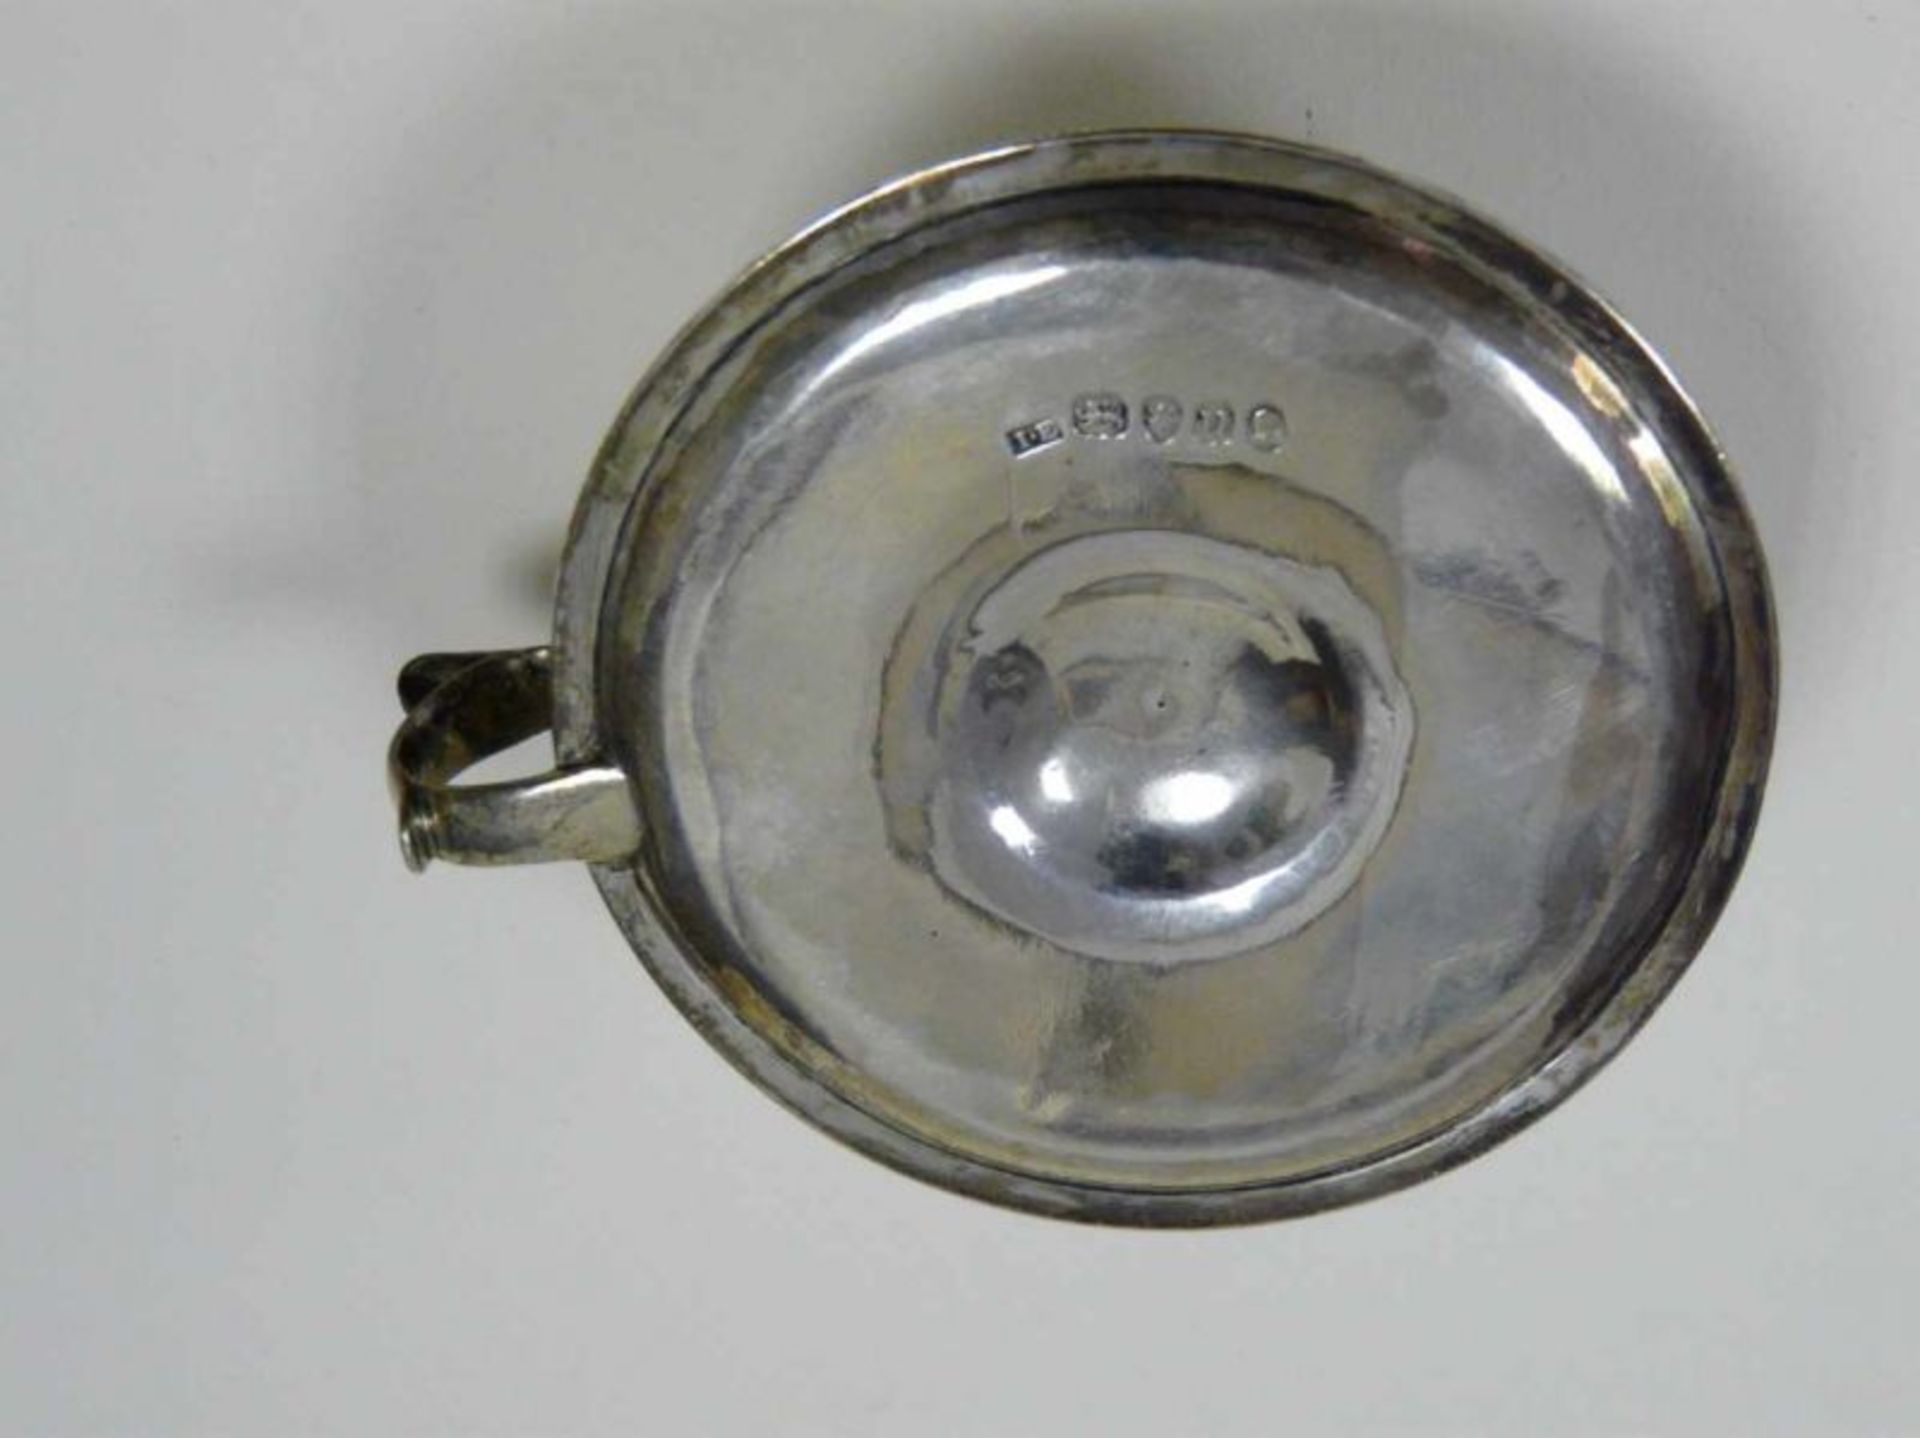 Kleiner Silber - Handleuchter EnglandEnglischer Handleuchter mit Löschhütchen, punziert: George - Image 3 of 3